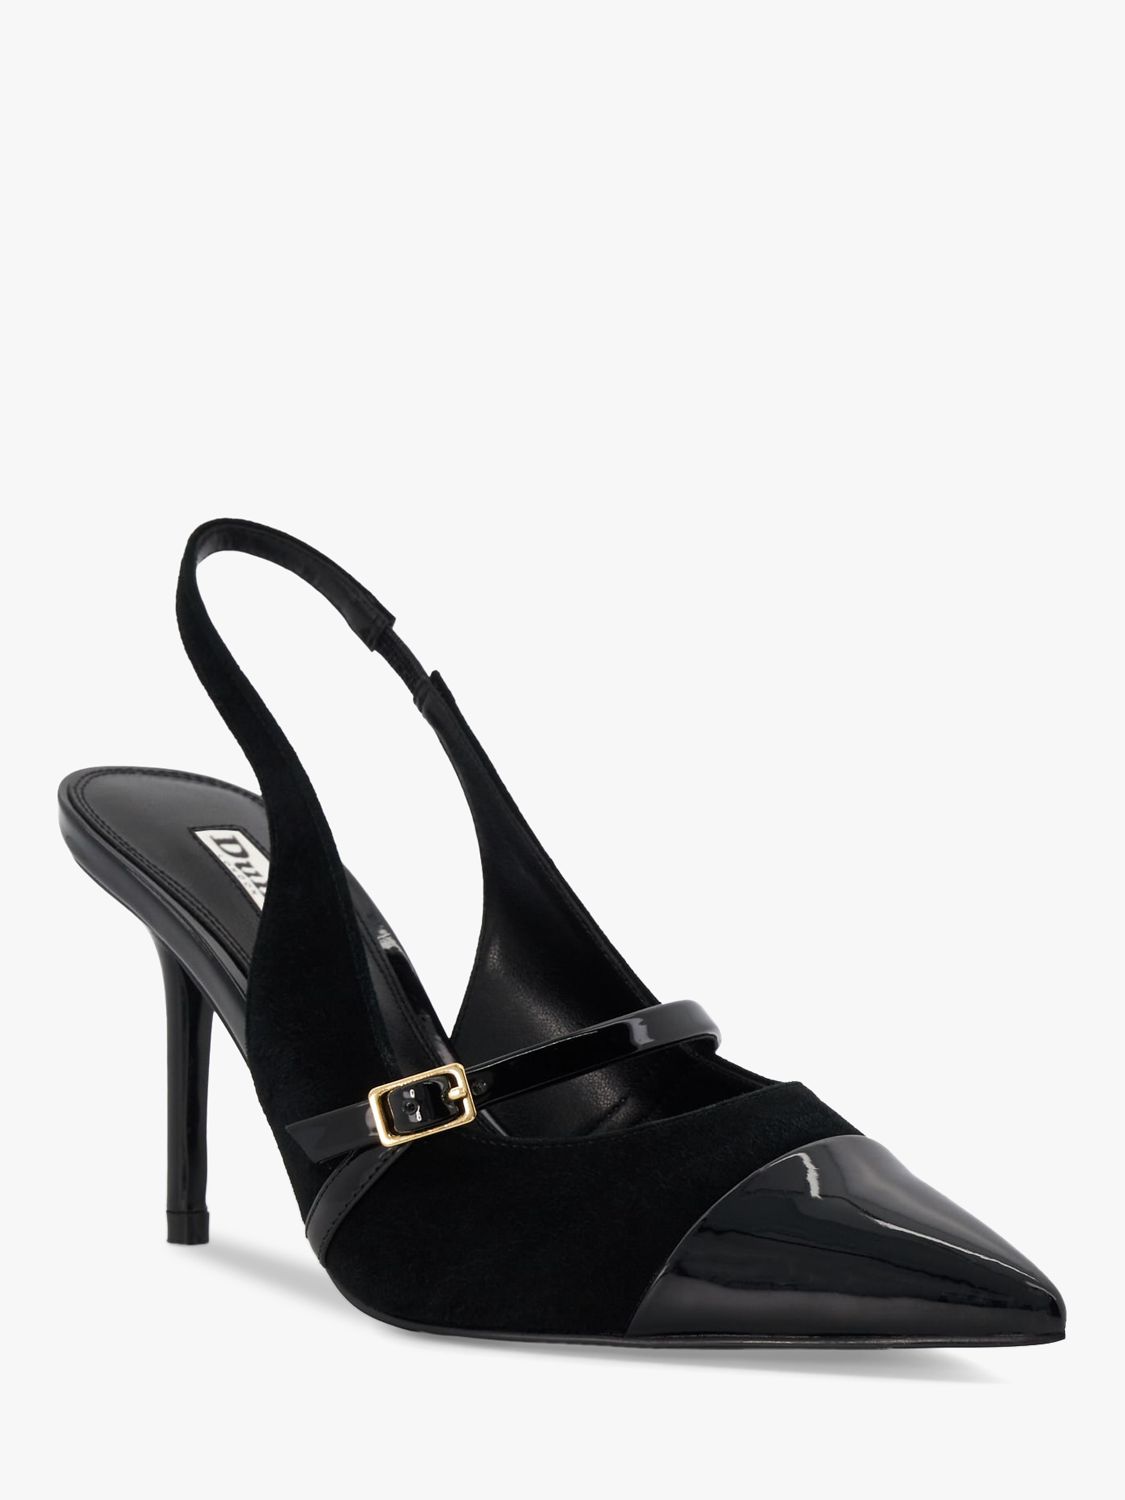 Dune Carisma Suede/Patent Mix Slingback Court Shoes, Black, EU36